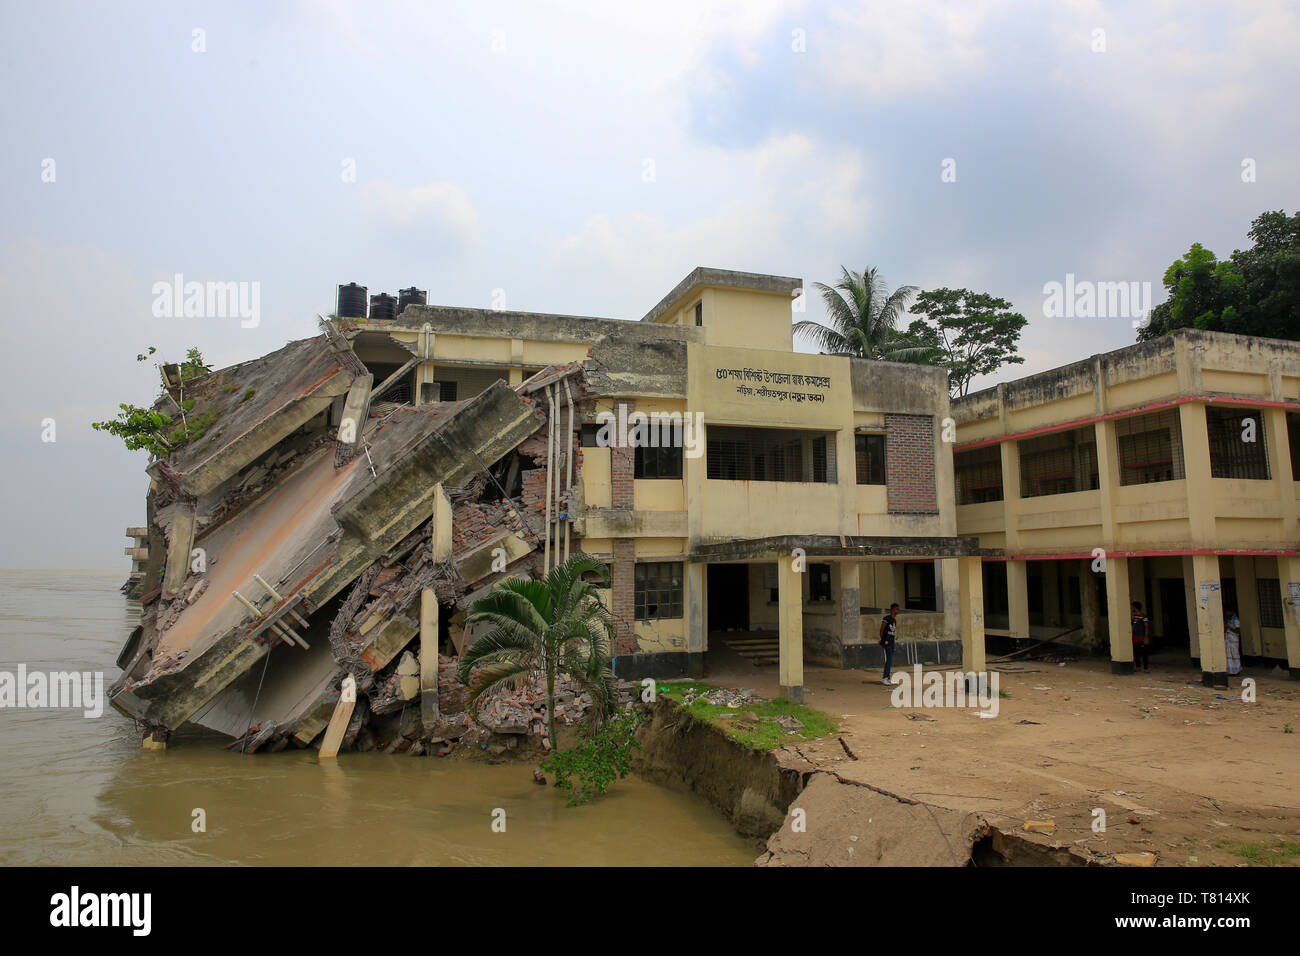 Naria Upazila Gesundheit komplexe Gebäude im Stadtteil Shariatpur geht in die Padma River. Shariatpur, Bangladesch Stockfoto